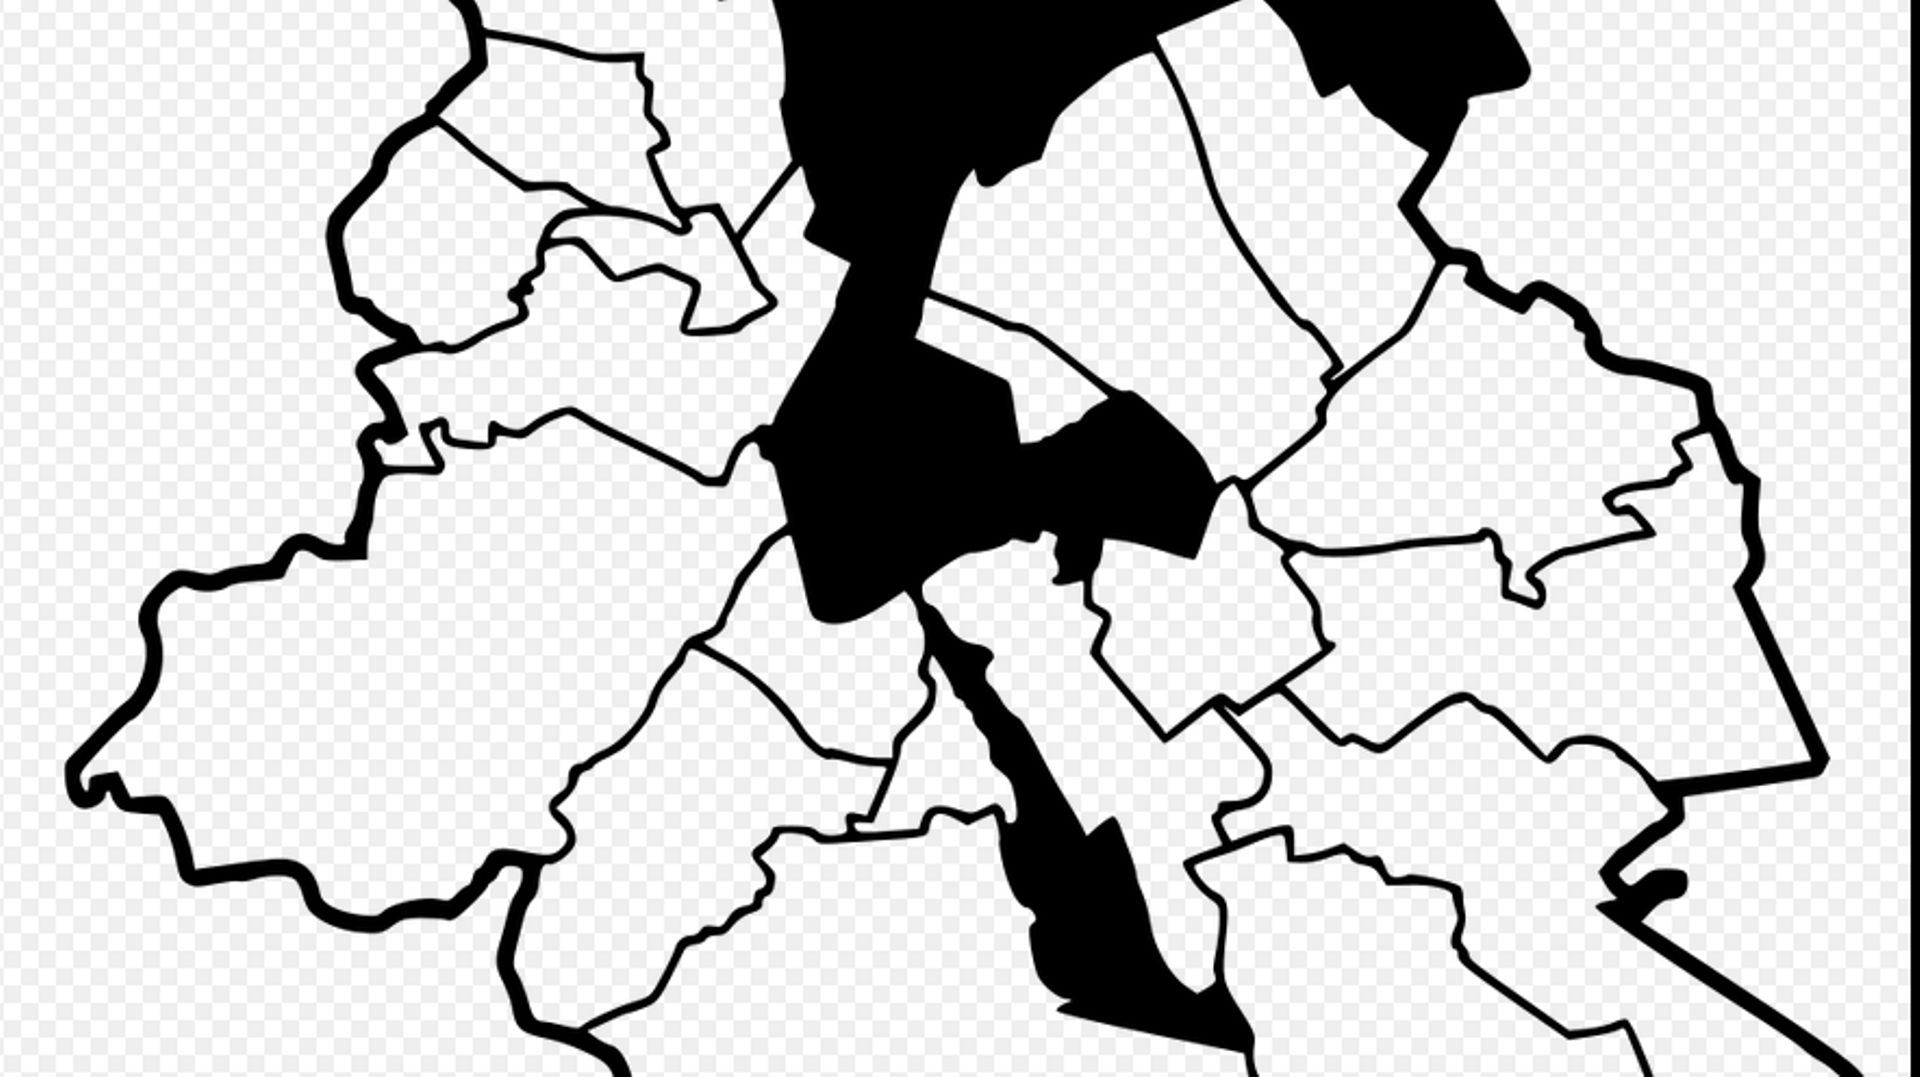 La loi du 30 mars 1921 prévoit d'intégrer Laeken et les villages de Haren et Neder-Over-Heembeek au territoire de la Ville de Bruxelles 